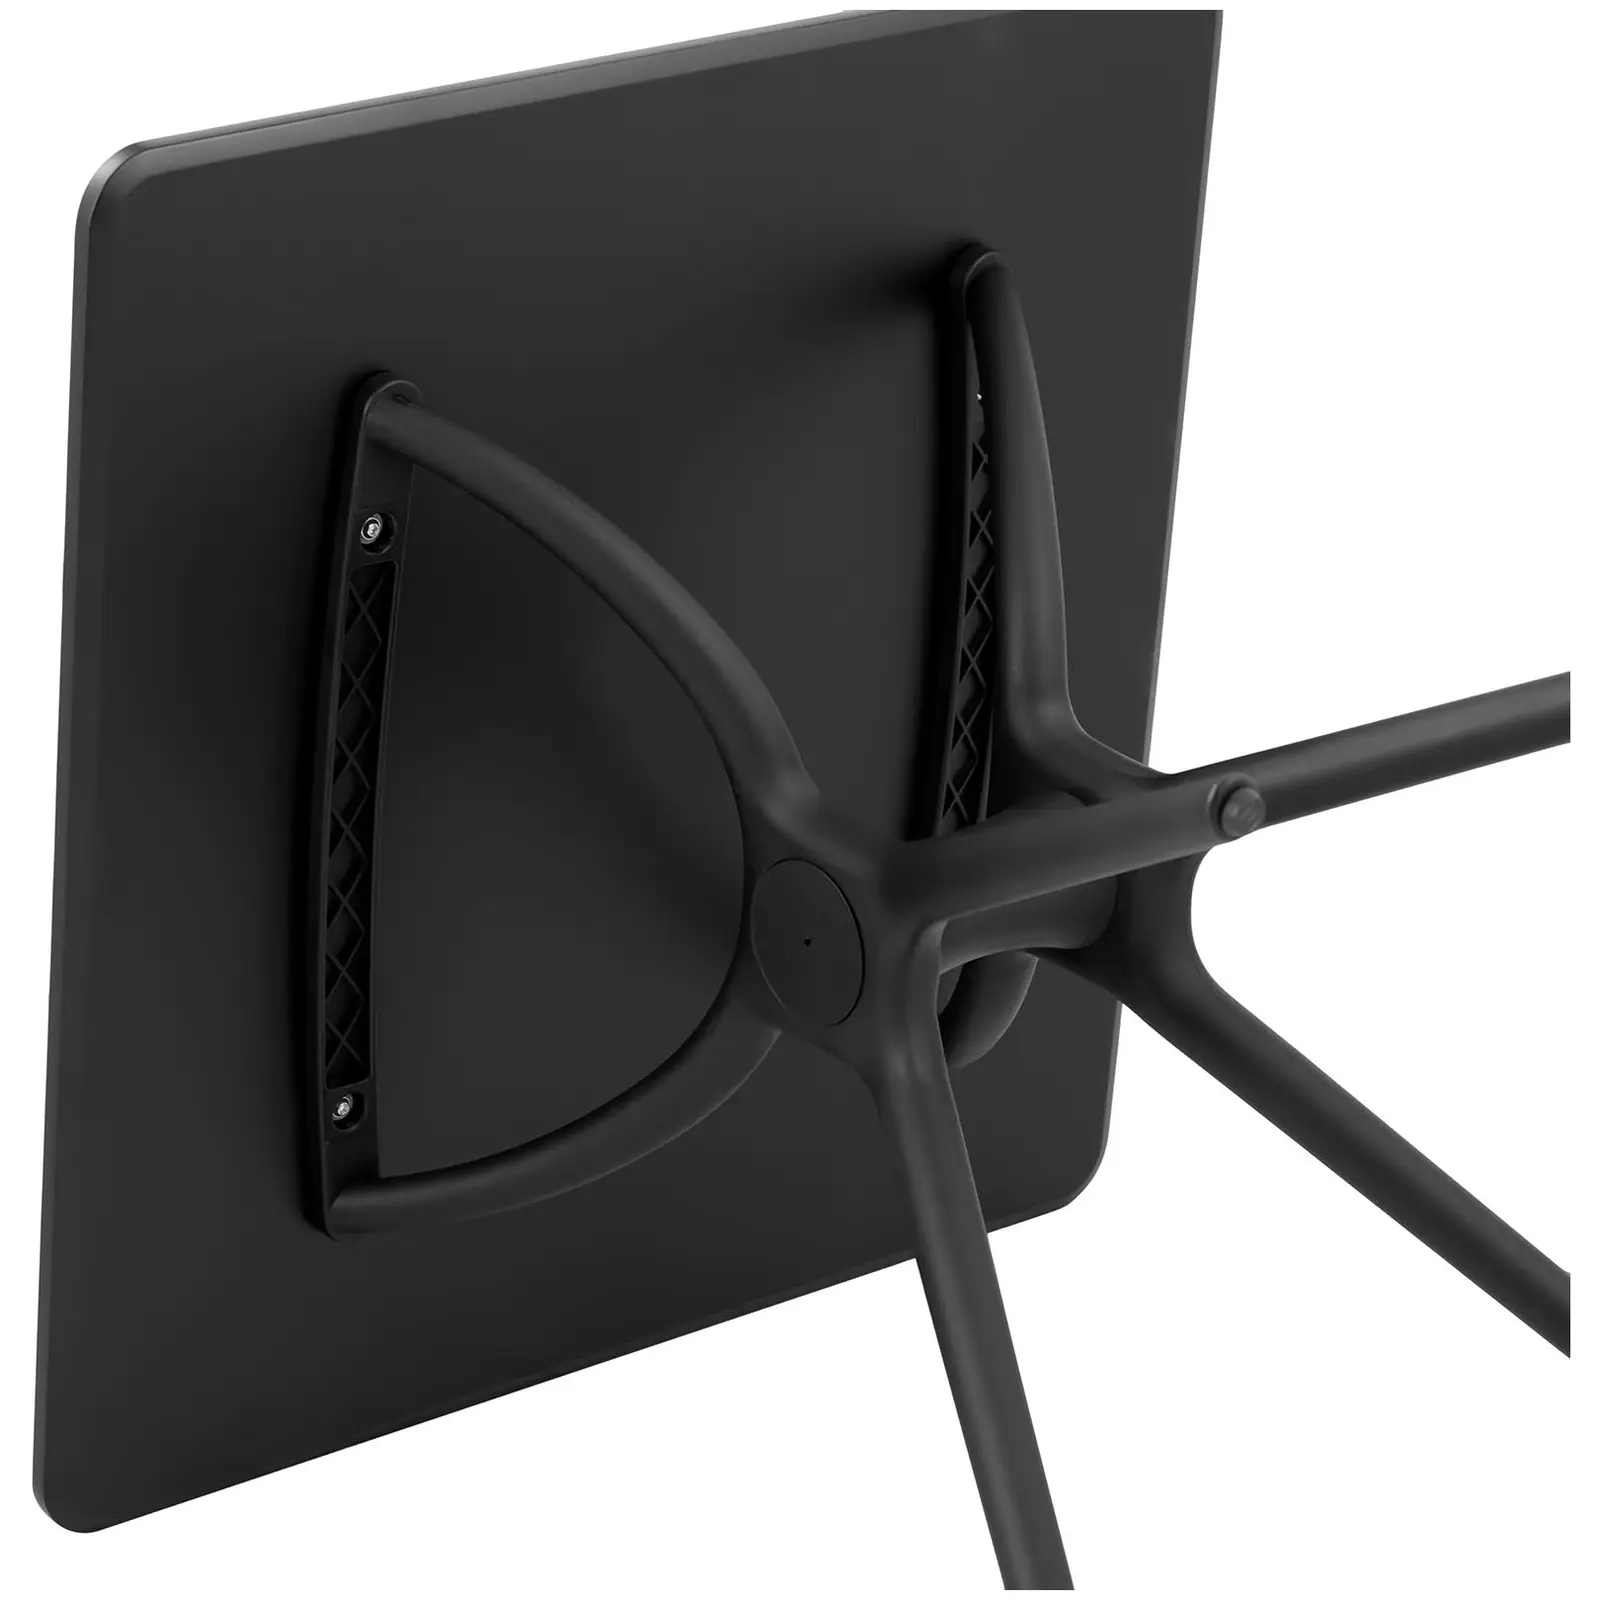 Table - Plateau carré - 80 x 80 cm - Coloris noir